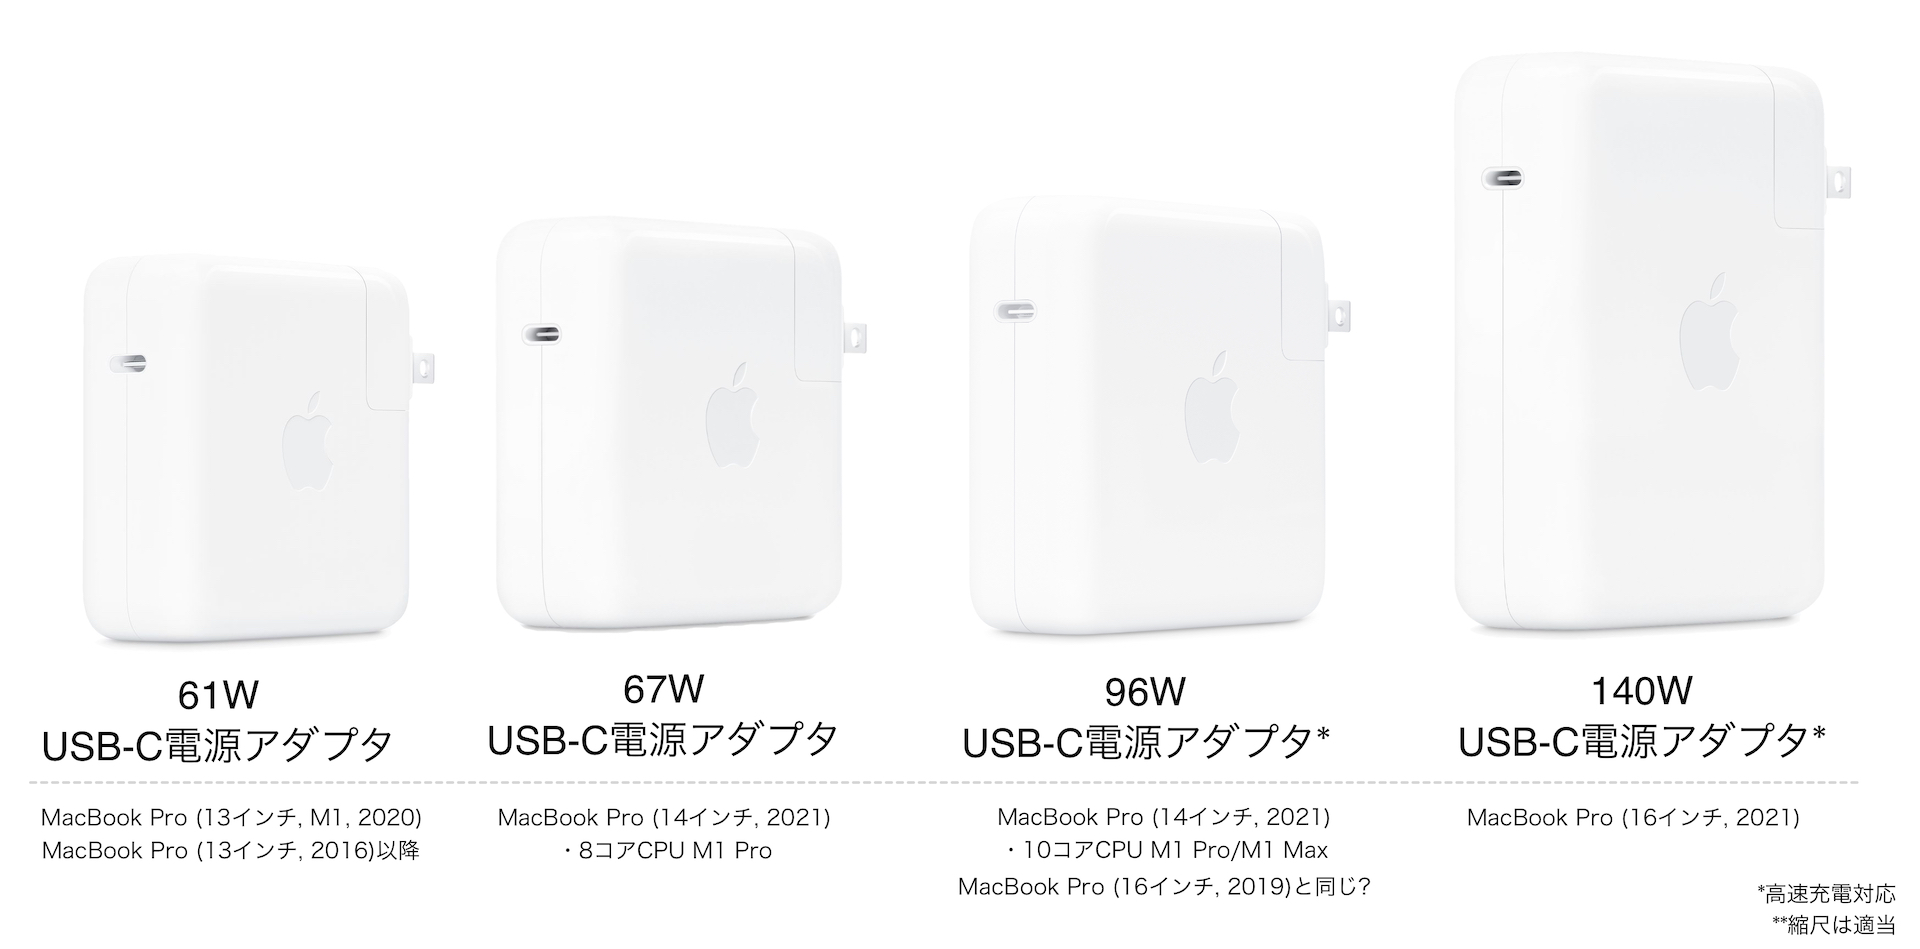 店舗良い Apple 純正 96W USB-C 電源 アダプタ sushitai.com.mx